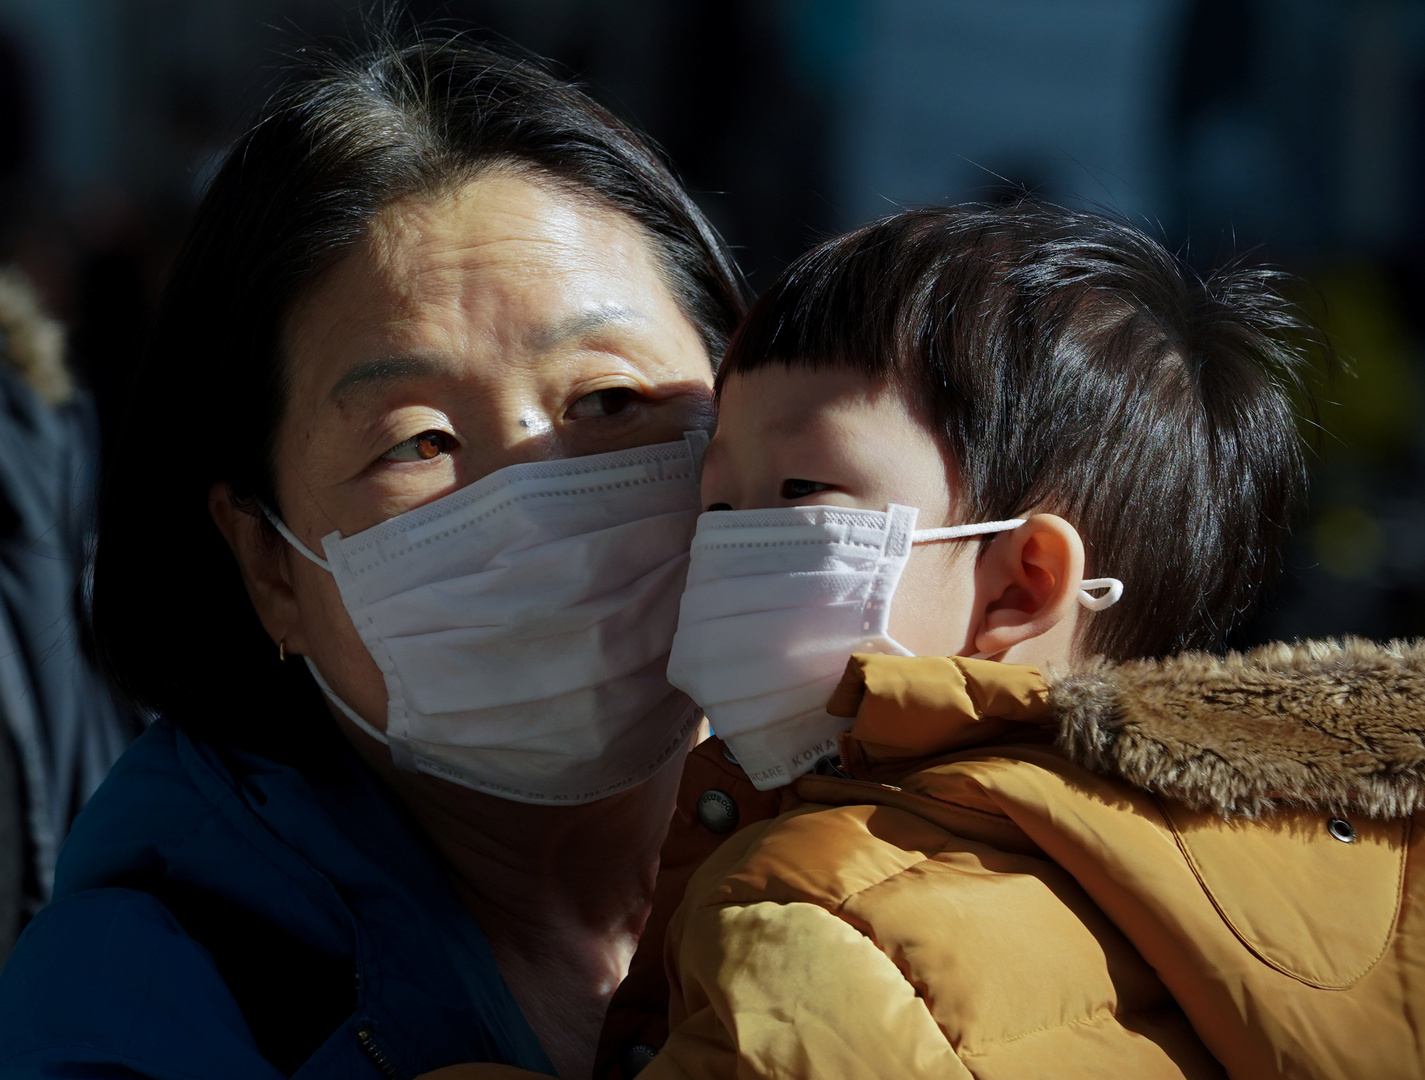 الصين تلجأ إلى استيراد الأقنعة وبدلات الحماية من العدوى في ظل انتشار "كورونا"